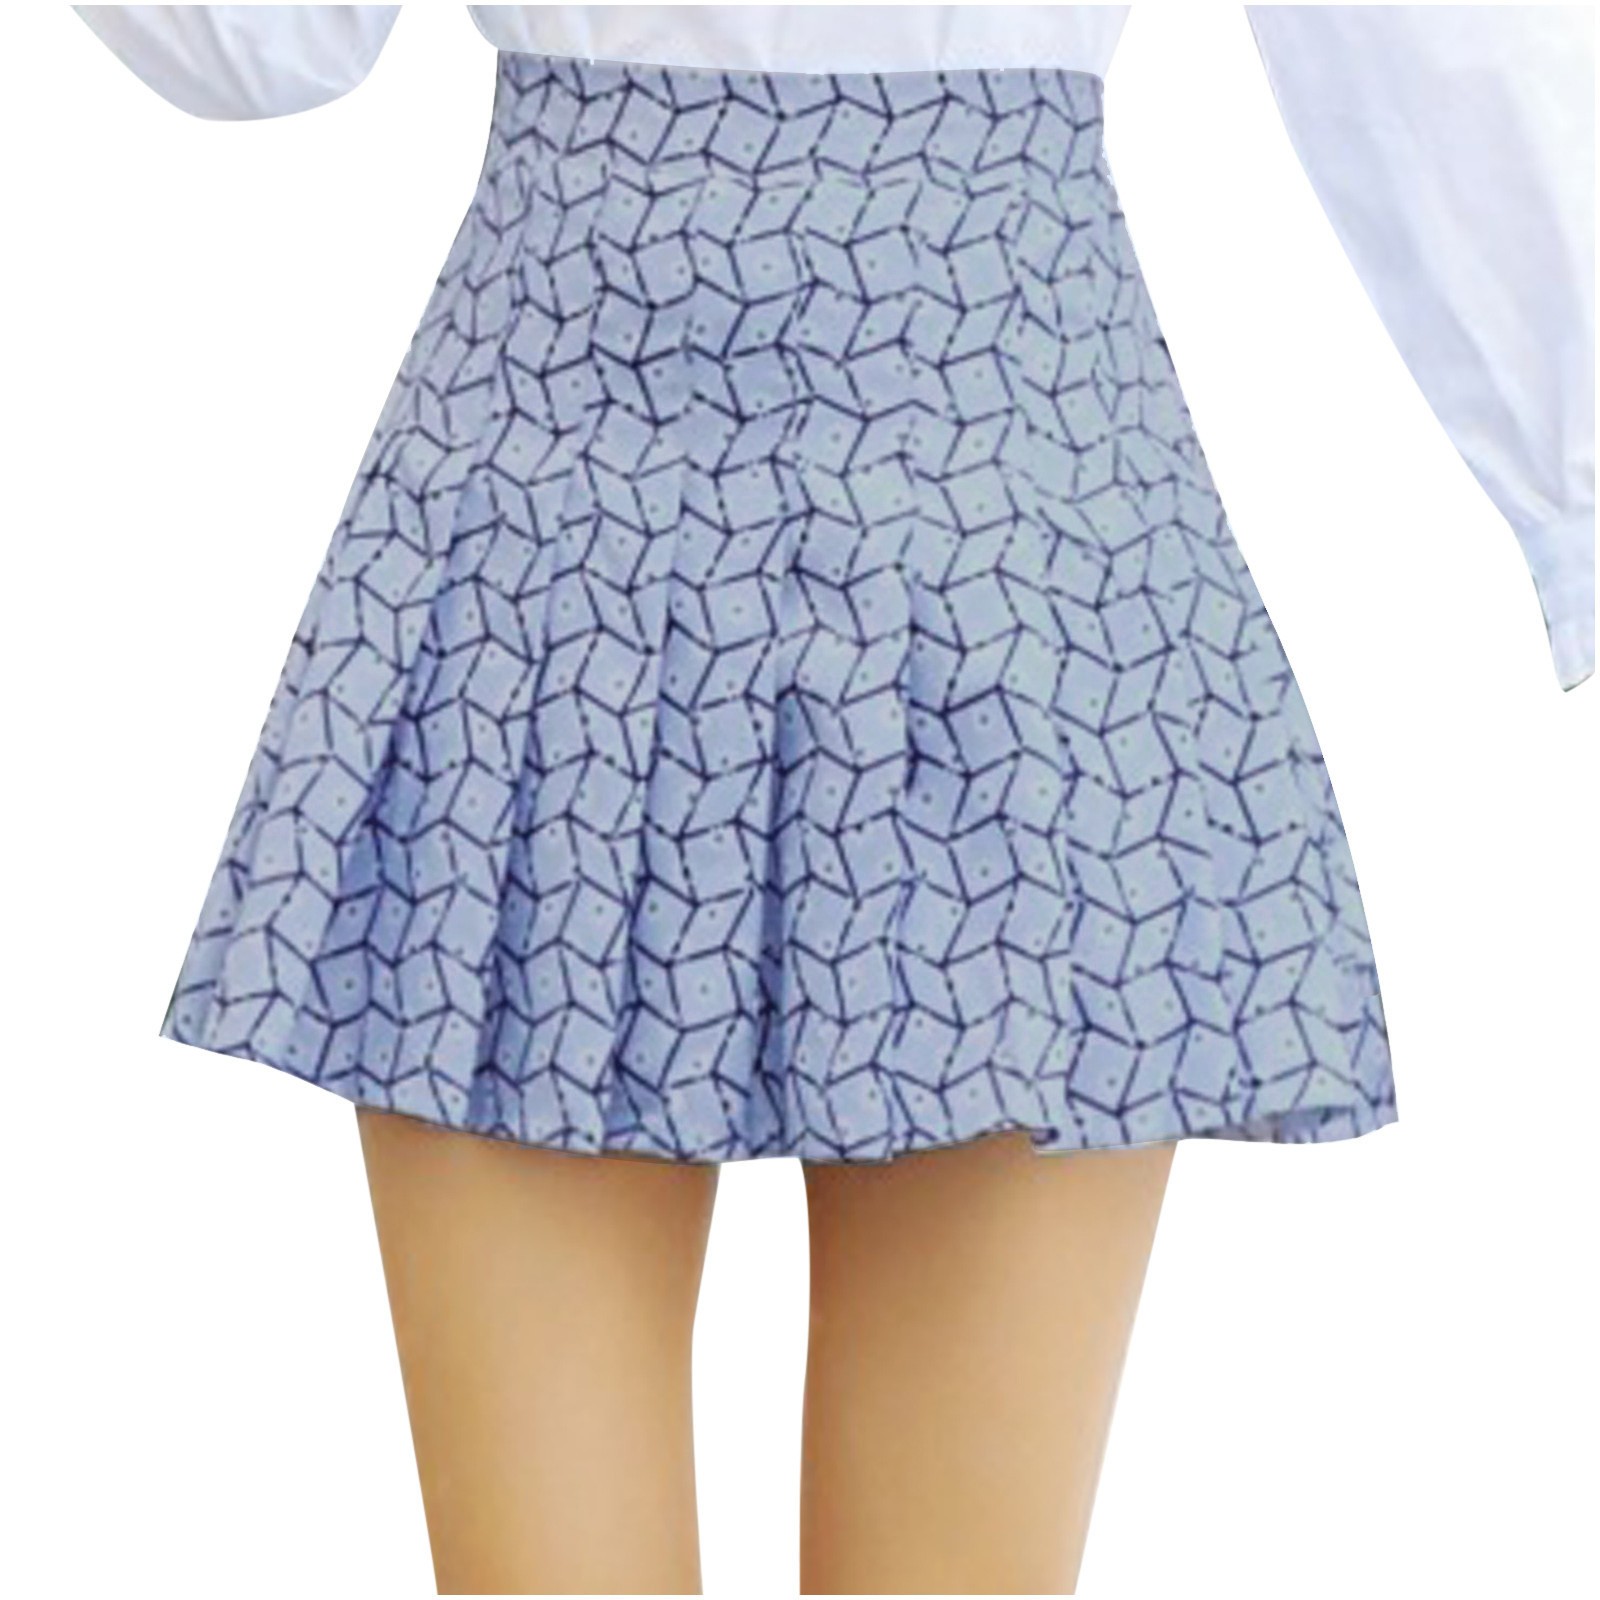 Ganfancp Women's A-line High Waist Culottes Short Skirt Pleated ...